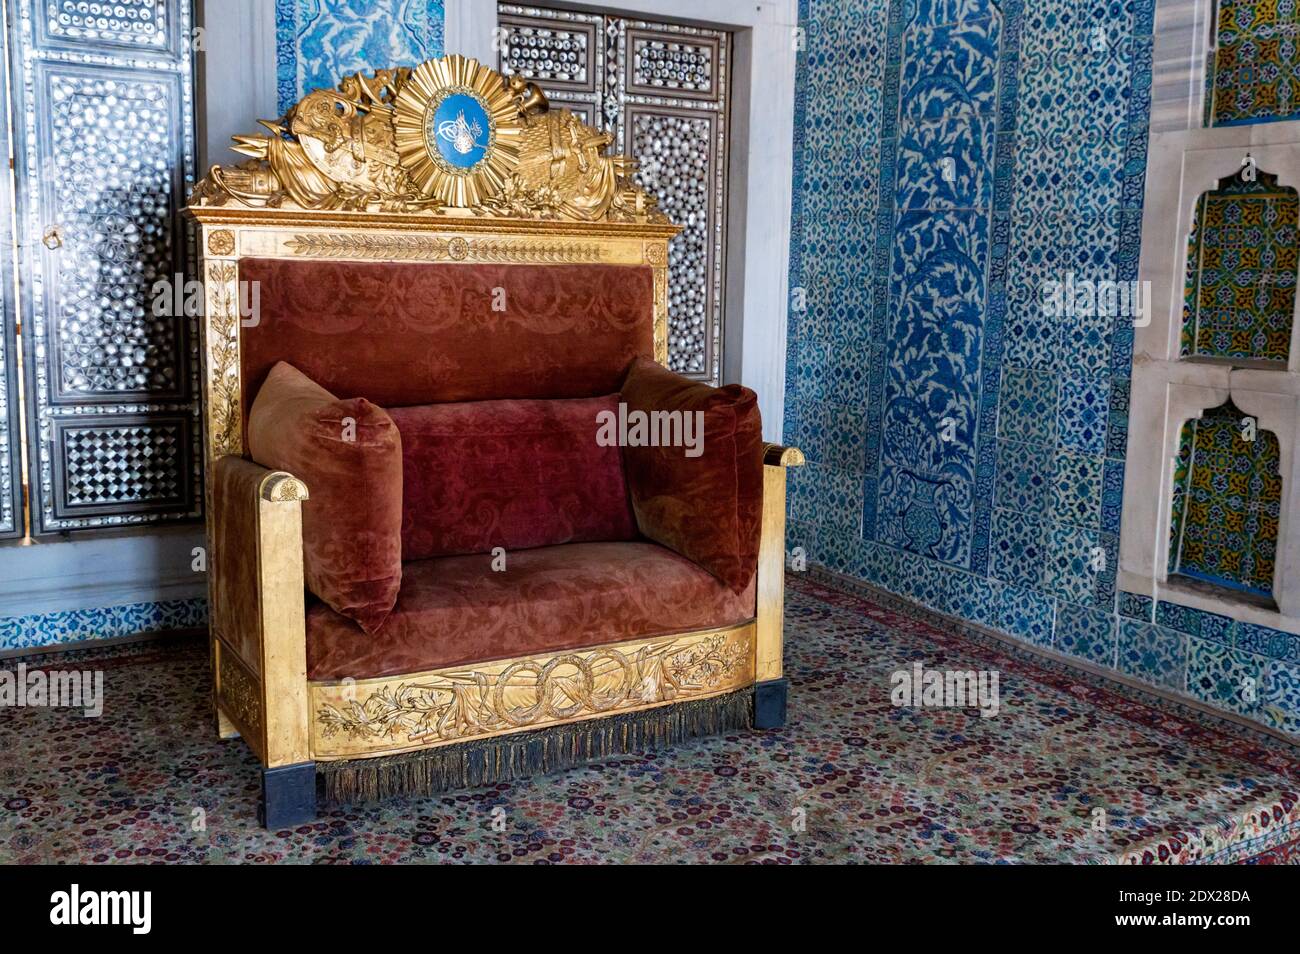 Éléments de décoration de palais orientaux au trône de cérémonie dorée, avec texture ou élément décoratif de modèle oriental dans le style turc ou pouf Banque D'Images